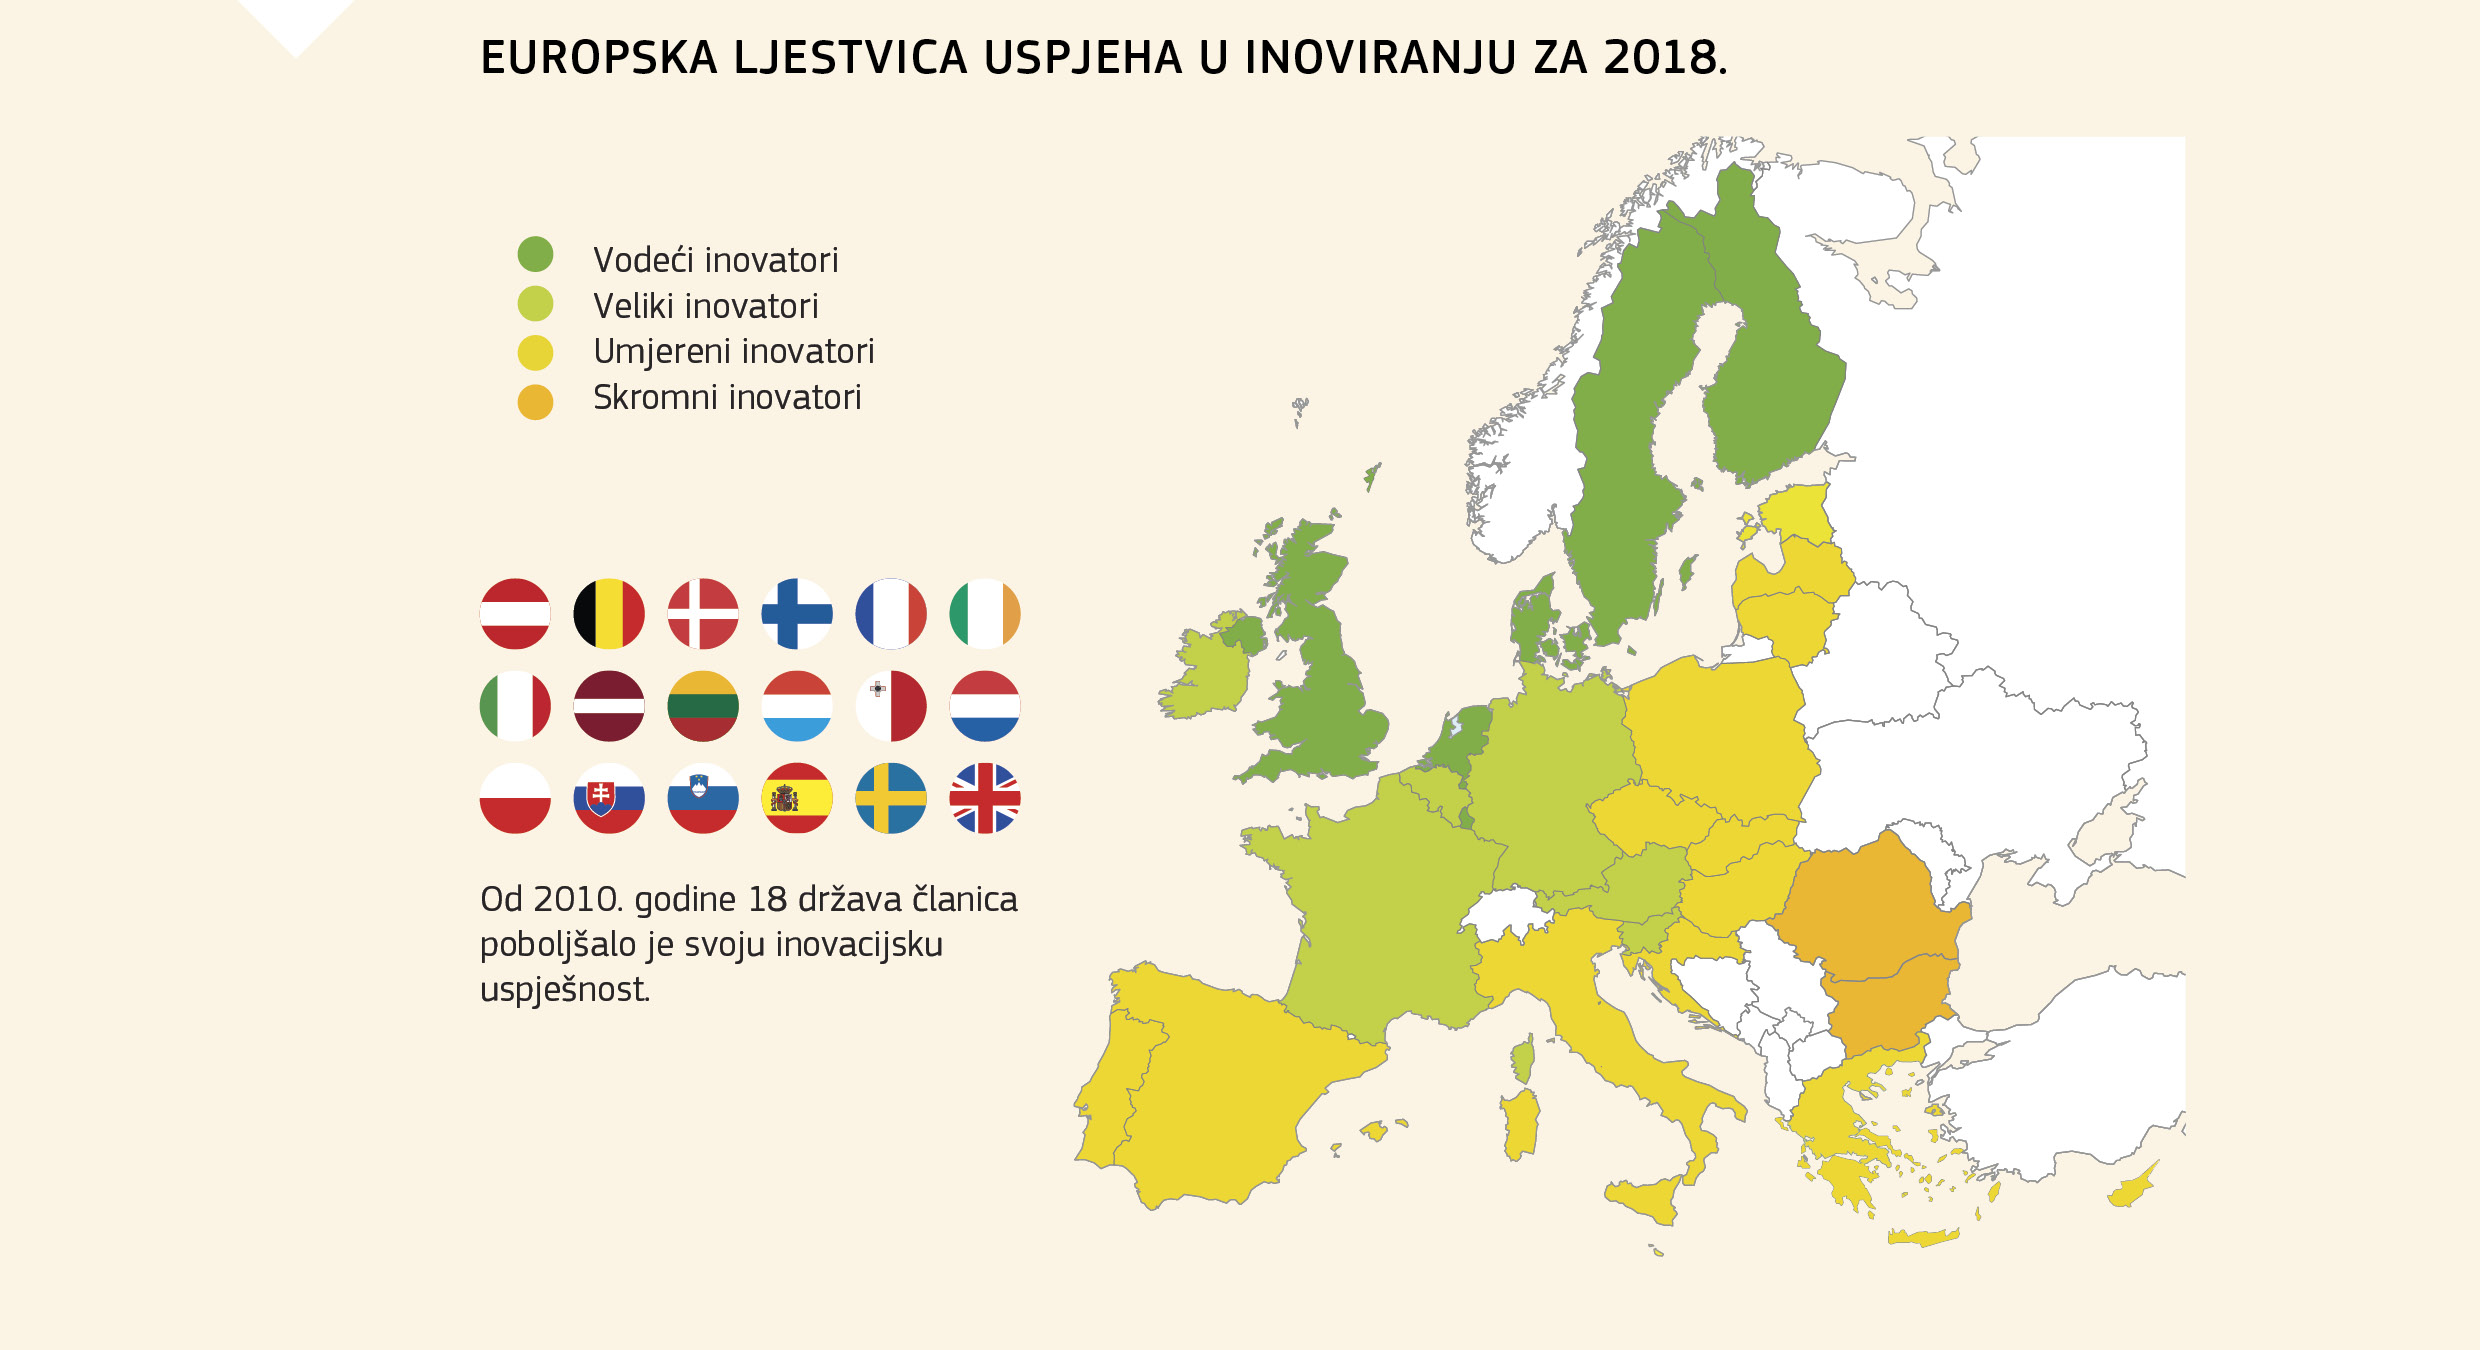 EUROPSKA LJESTVICA USPJEHA U INOVIRANJU ZA 2018.